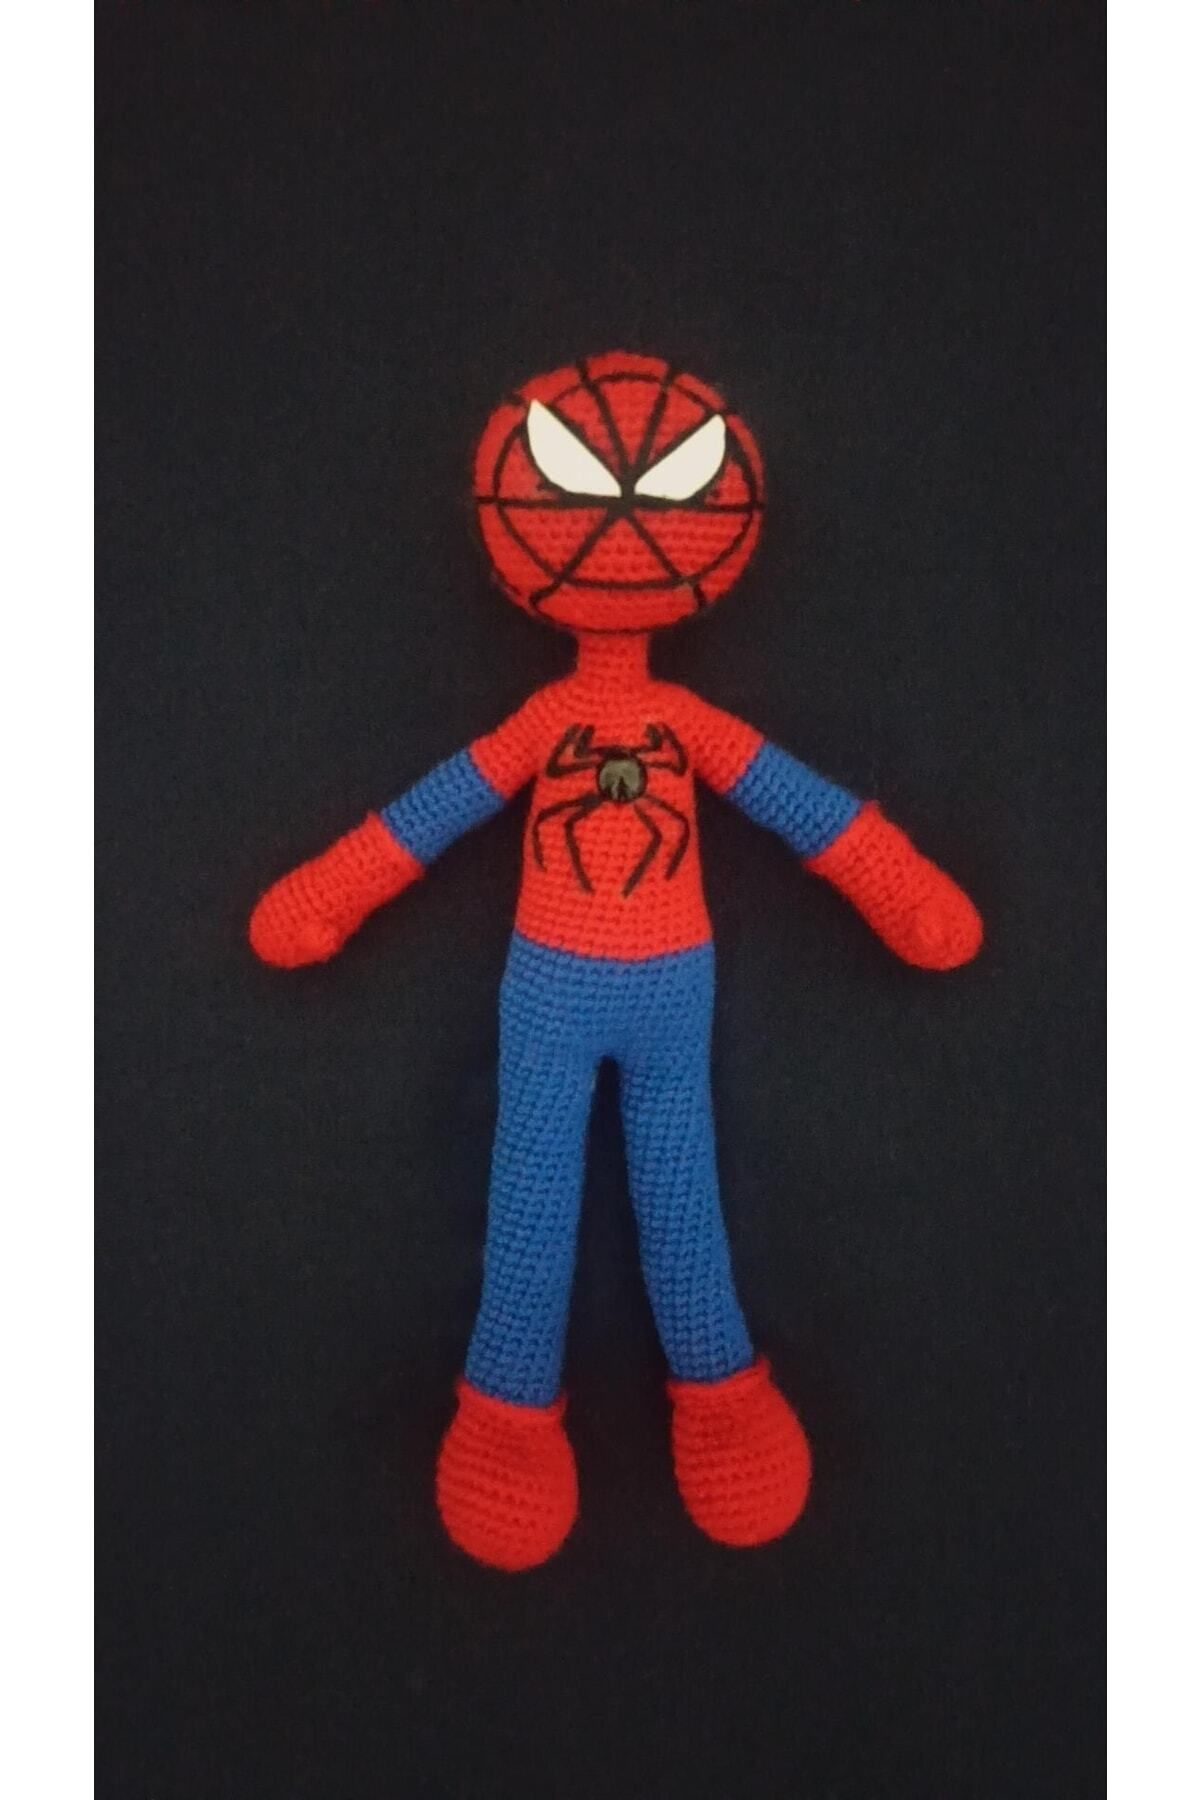 S&k Collection Amigurumi Organik Spiderman (örümcek Adam) Örgü Bebek Oyuncak